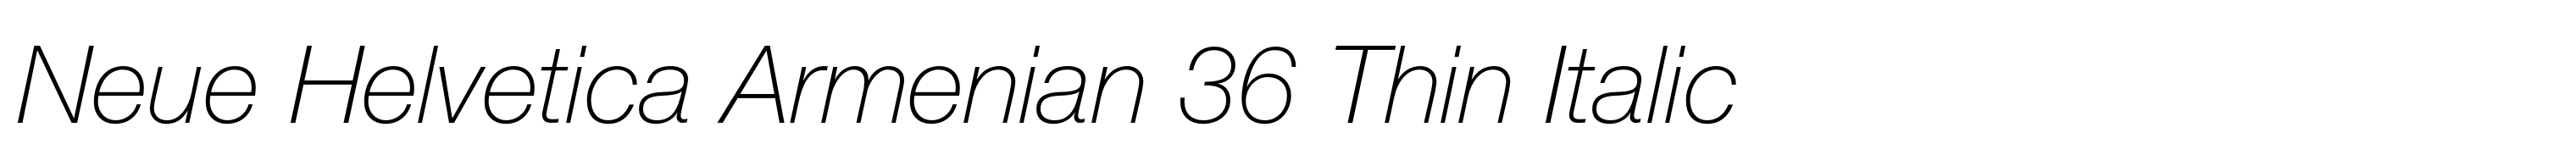 Neue Helvetica Armenian 36 Thin Italic